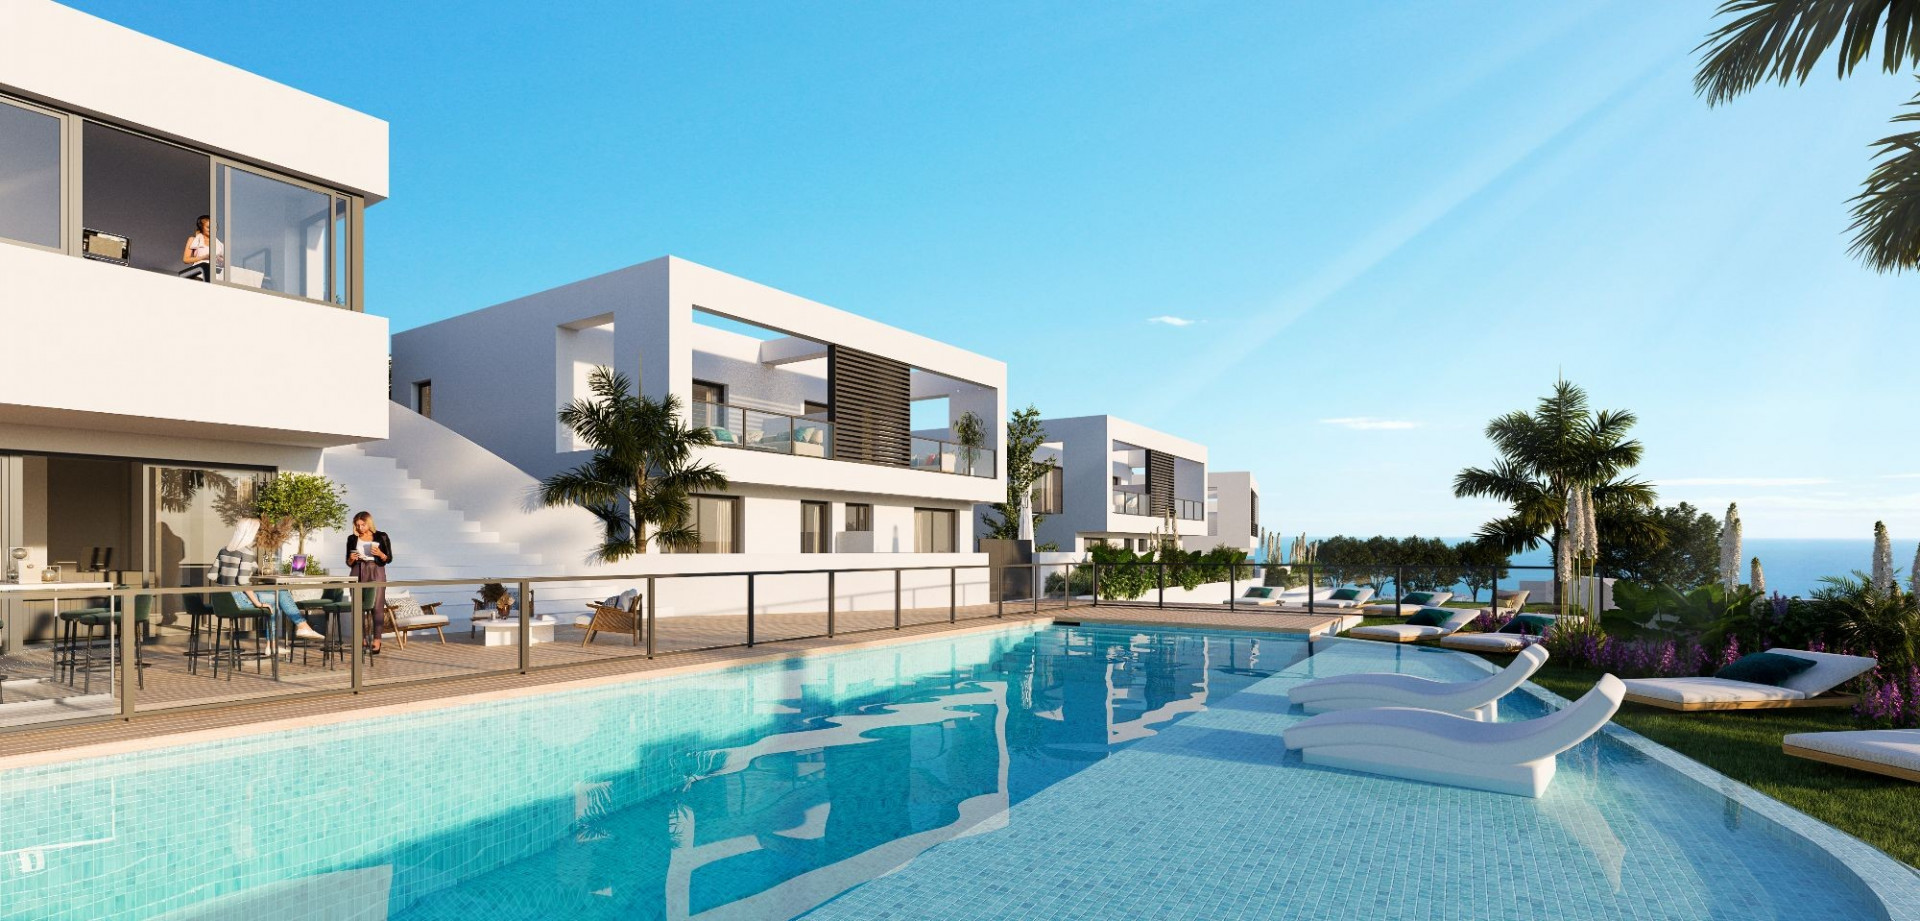 Complejo en plano de casas pareadas de lujo en venta en Riviera del Sol